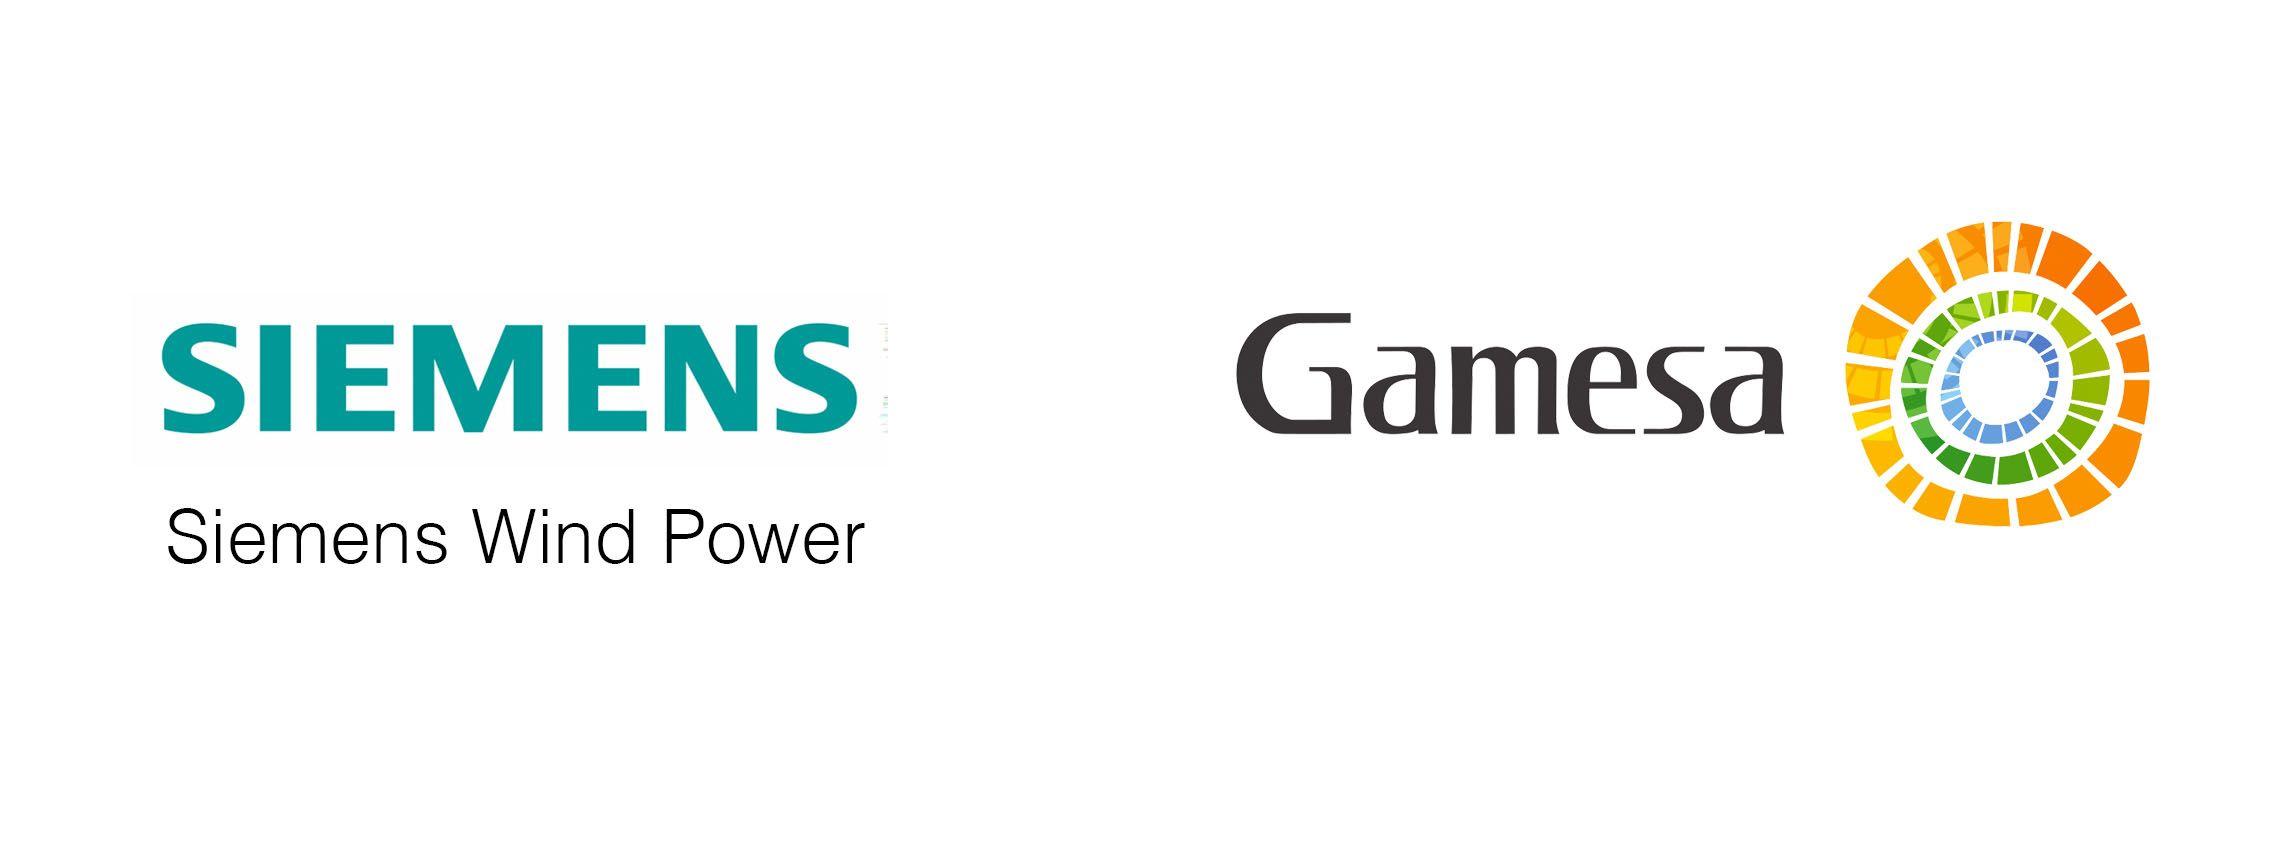 Siemens Energy Logo - Siemens Gamesa - Saffron Brand Consultants